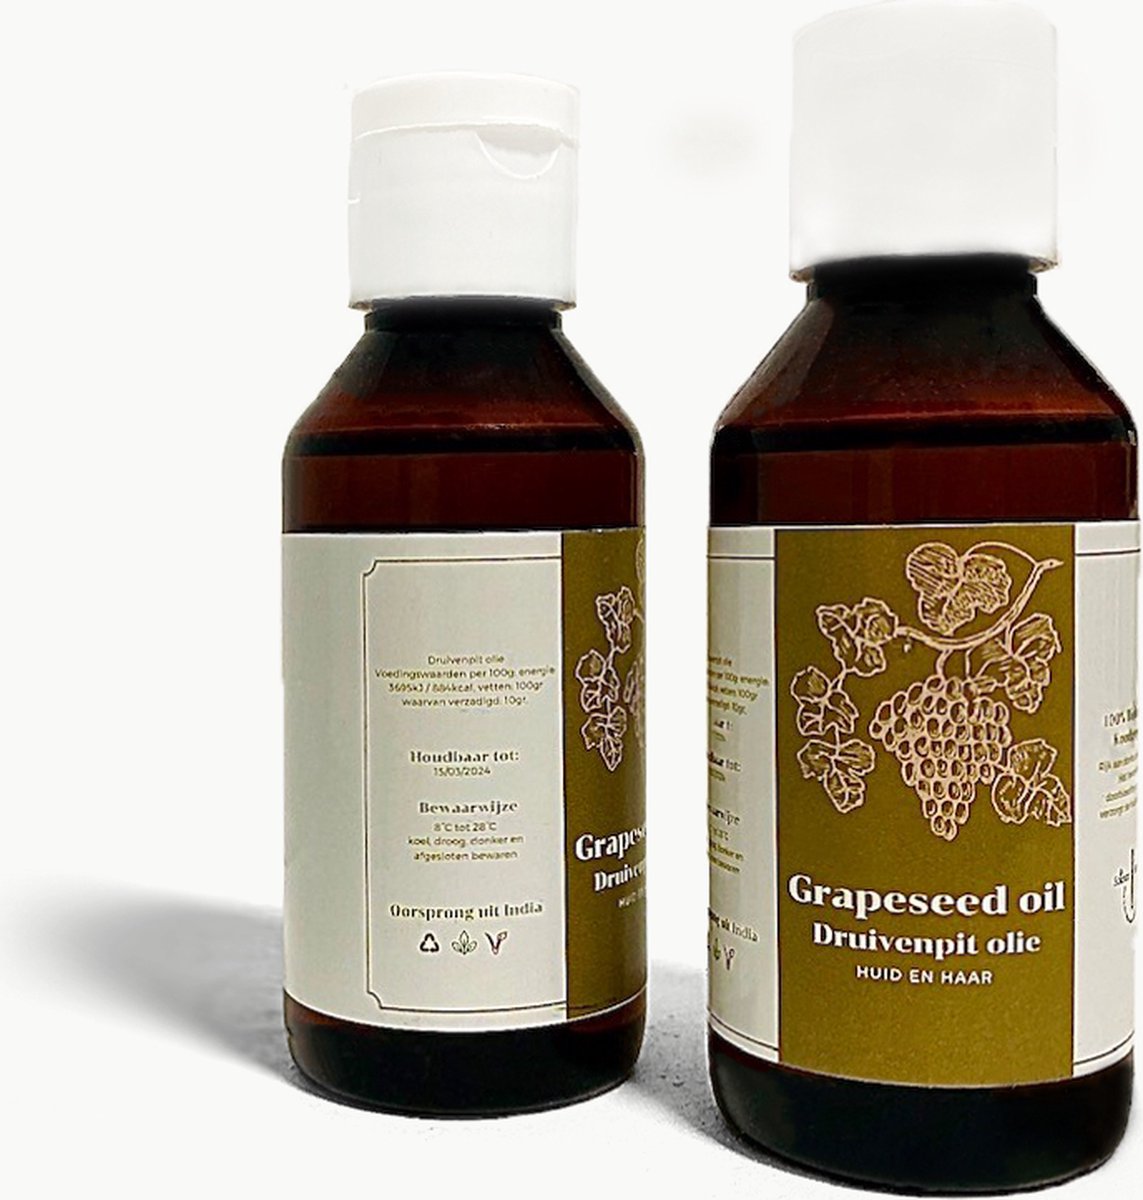 sciencesisters - Druivenpitolie - Baby olie - Grapeseed oil - 100 ml - koud geperst - huidolie - haar olie - haar serum - haargroei - huidverzorging - gezichtsverzorging - massage olie - vitamine e olie